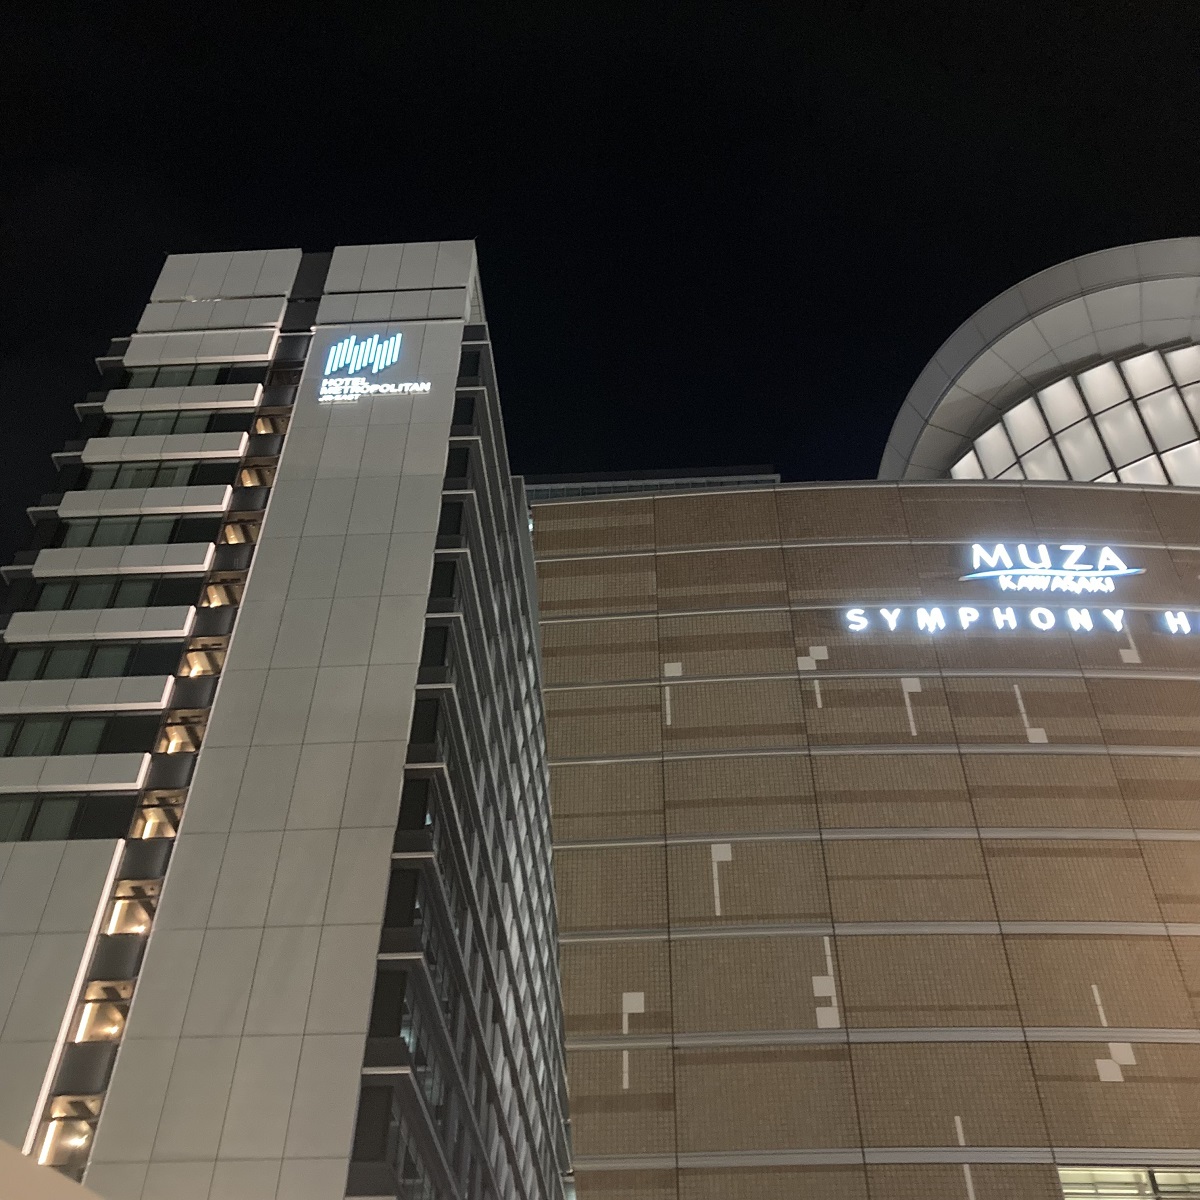 
ホテルメトロポリタン川崎とミューザ川崎シンフォニーホール